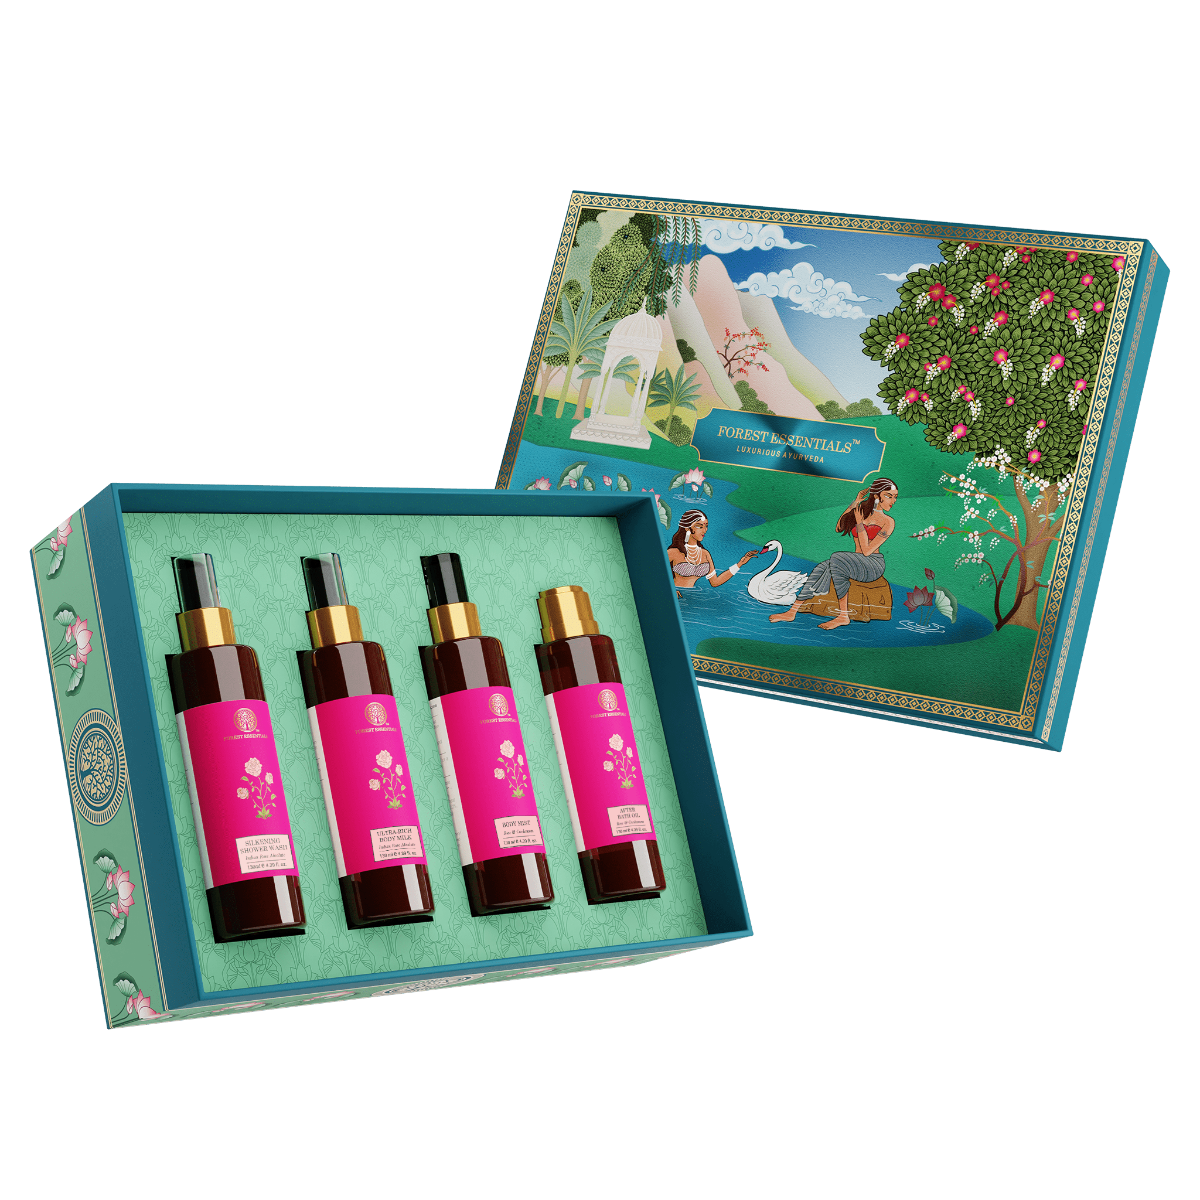 Forest Essentials Lakshmi Puja Oil Gift Box - Swadesii